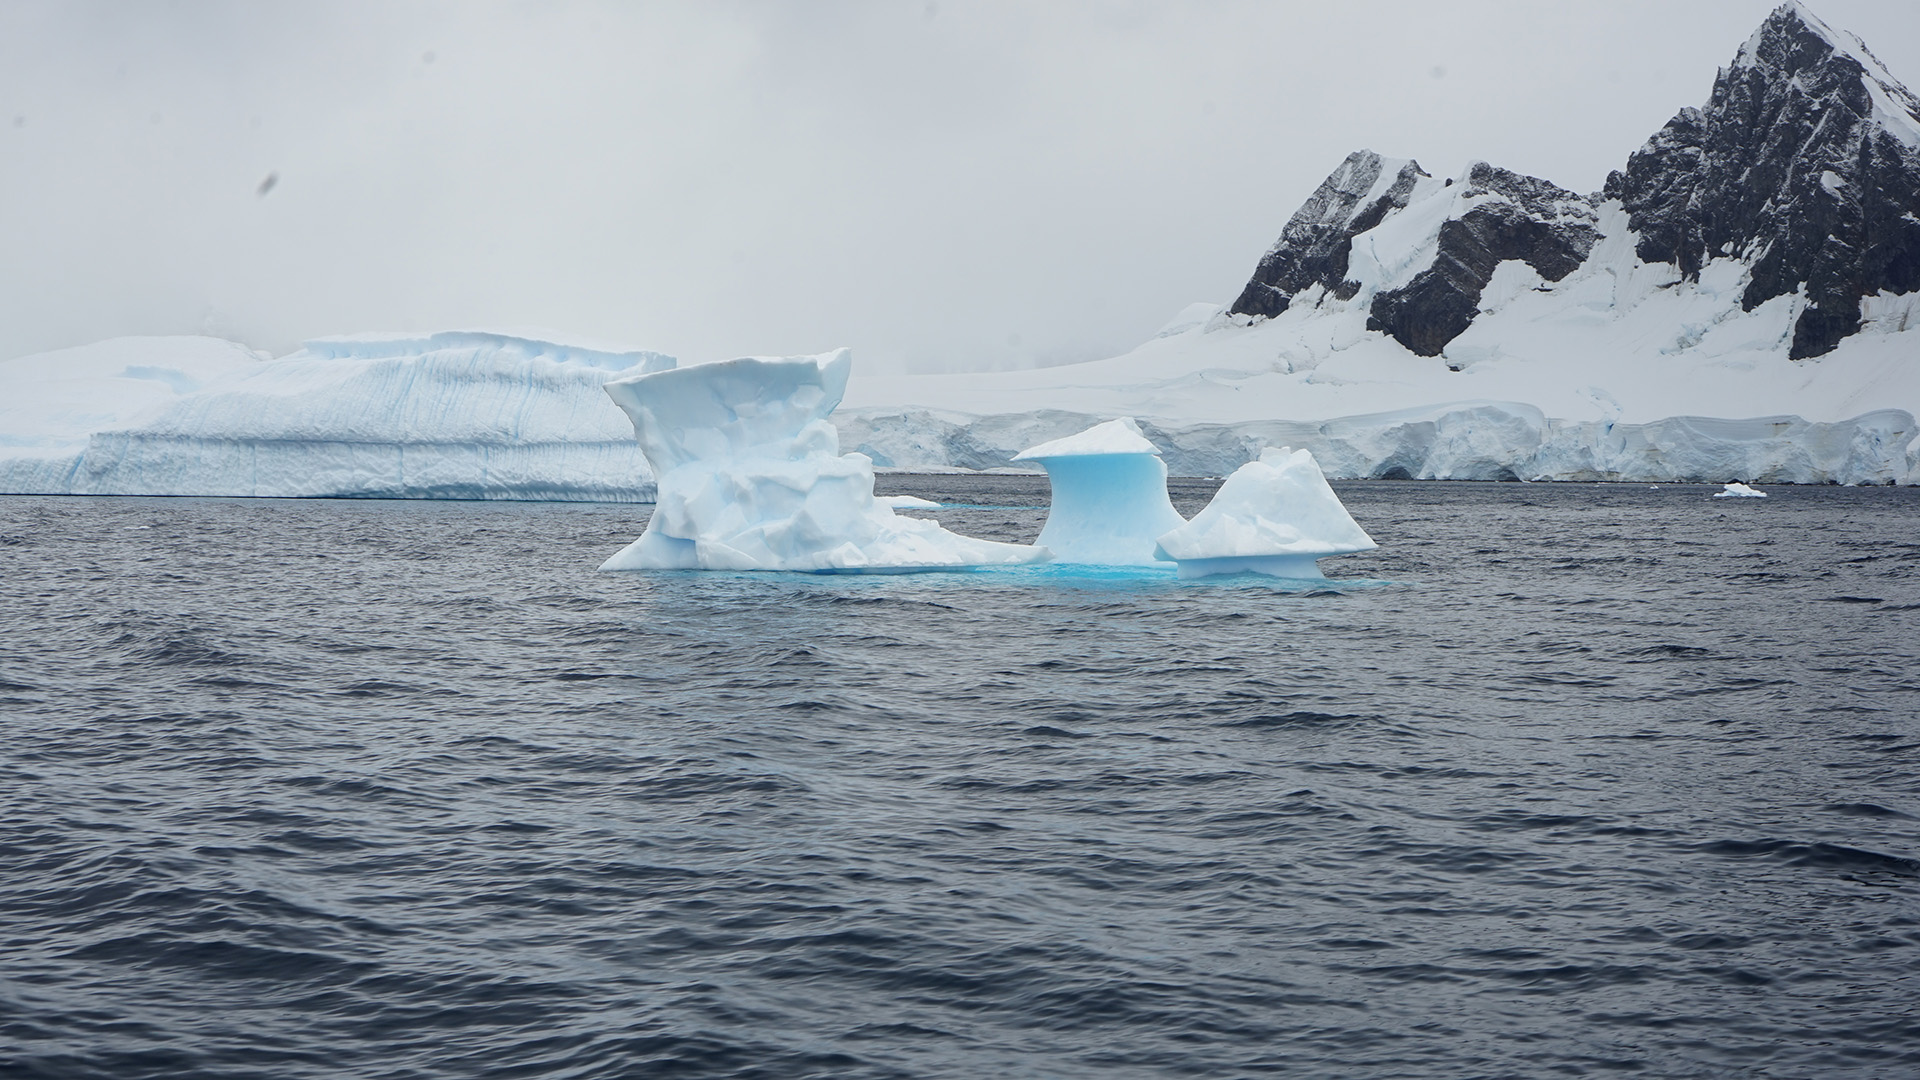 La propuesta es un viaje a la Antártida 